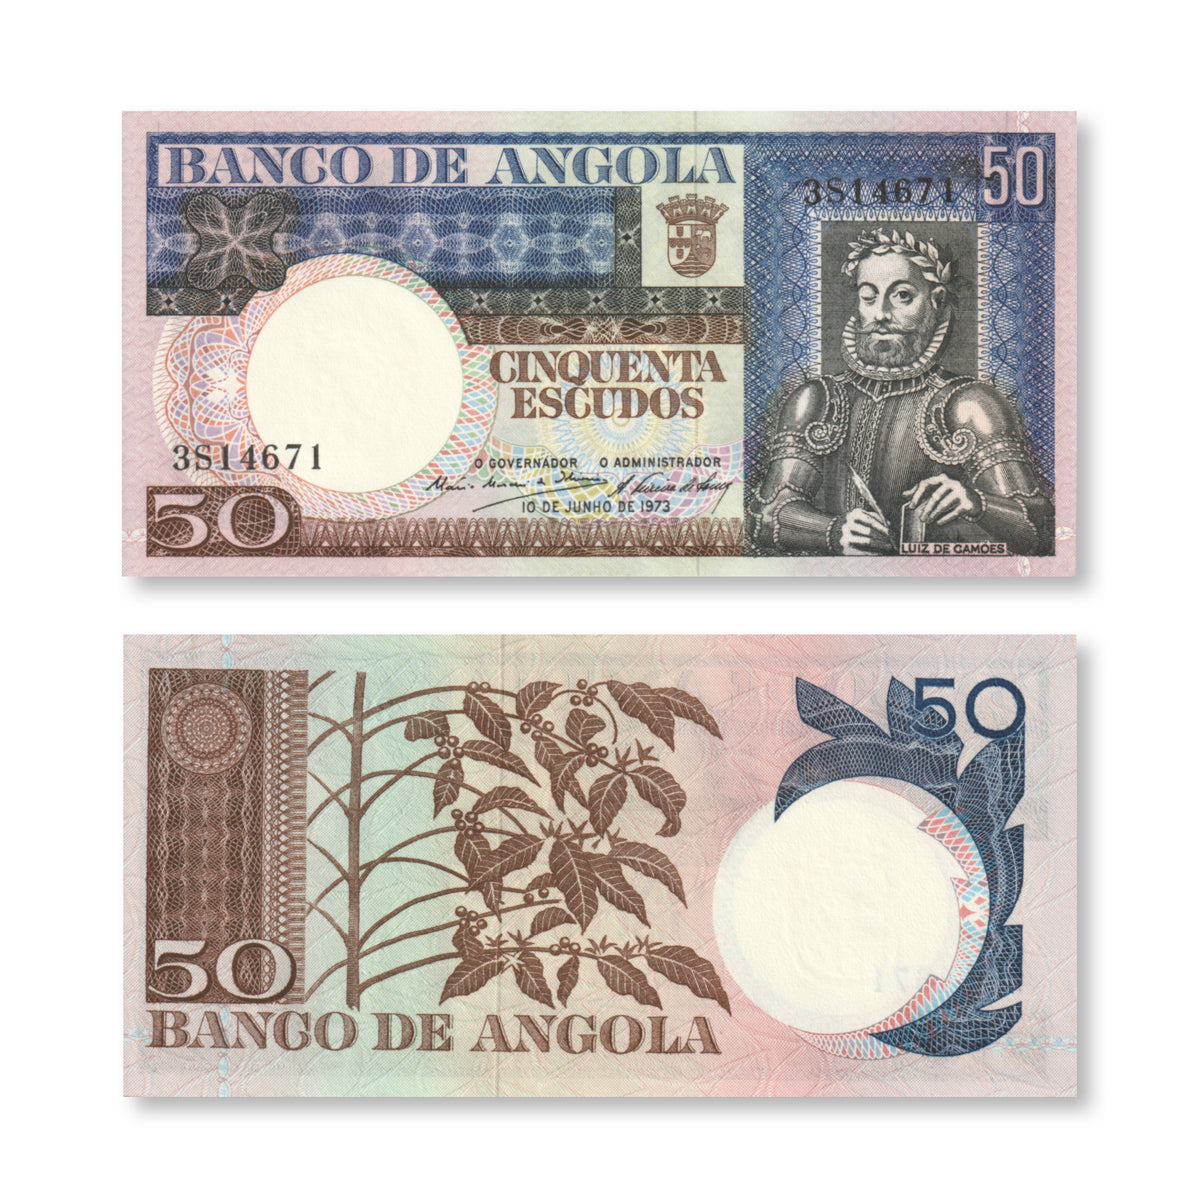 Angola 50 Escudos, 1973, B429a, P105a, UNC - Robert's World Money - World Banknotes